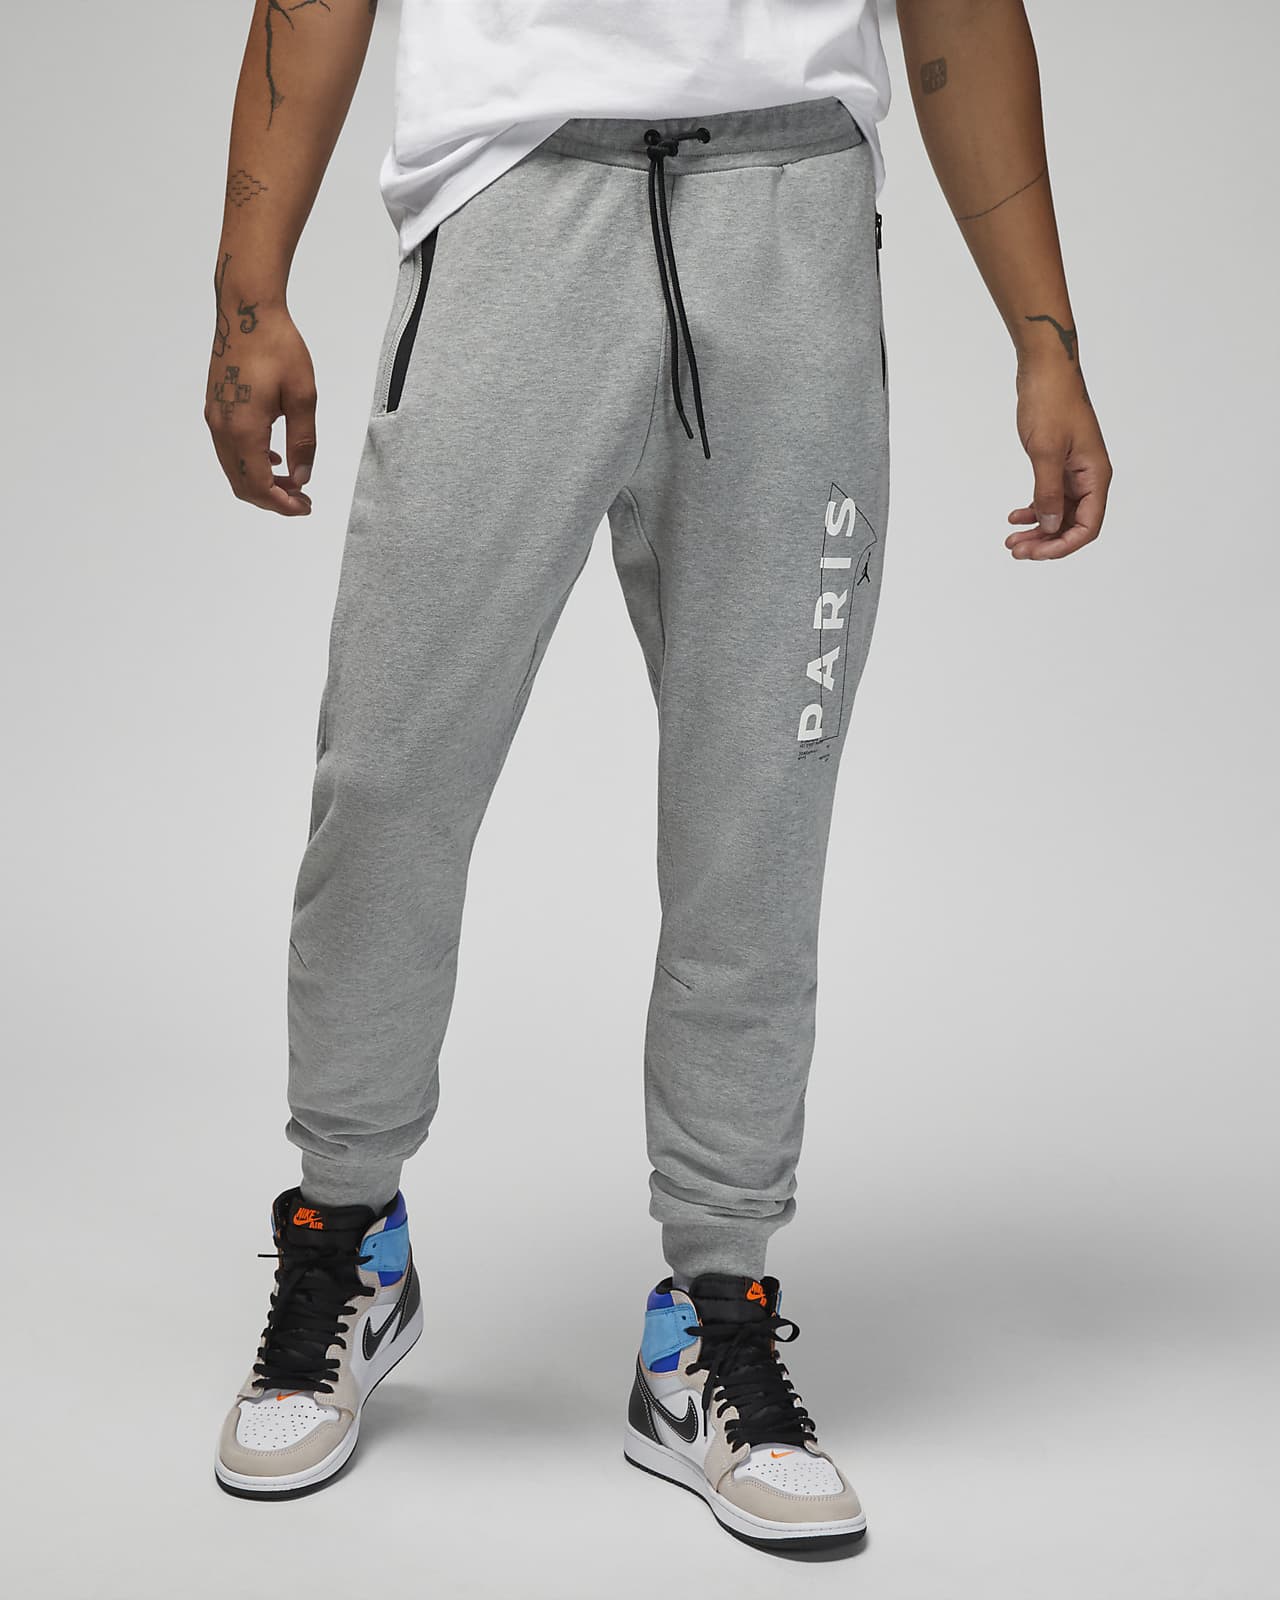 Saint-Germain Men's Pants. Nike.com